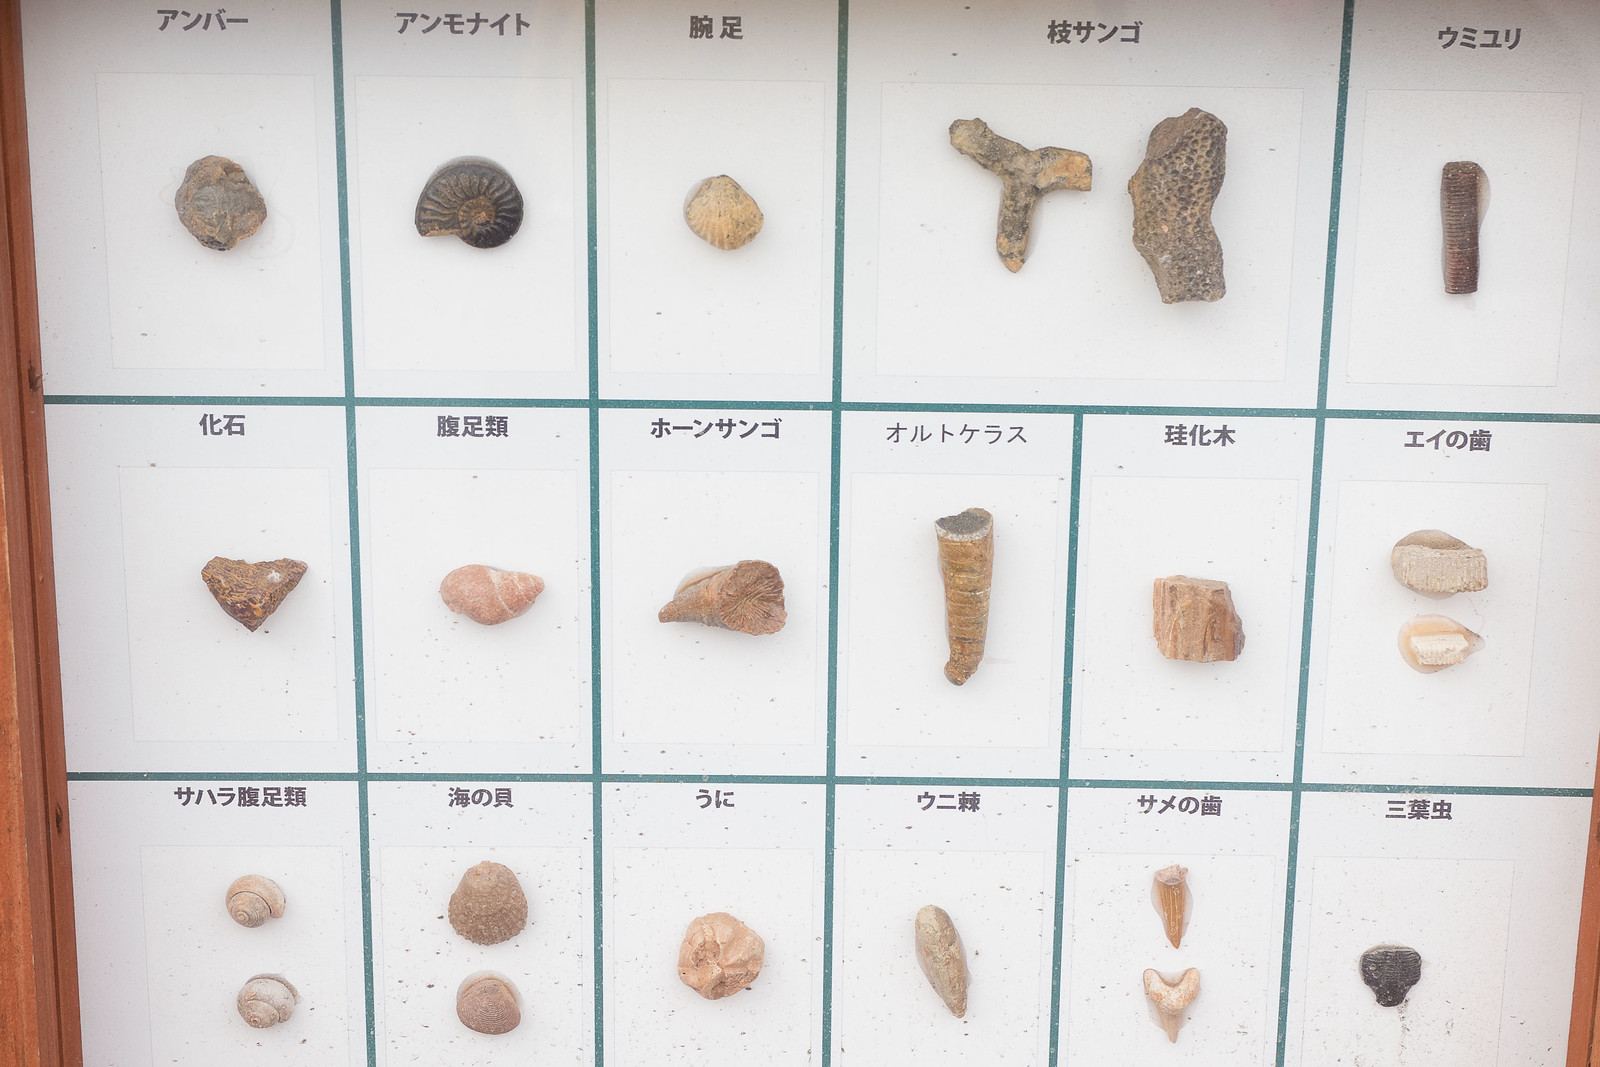 アンモナイトやエメラルドも！化石・宝石発掘体験や巨大迷路が楽しい、千葉県マザー牧場内の遊園地「わくわくランド」がおススメだぞ！ | むねさだブログ